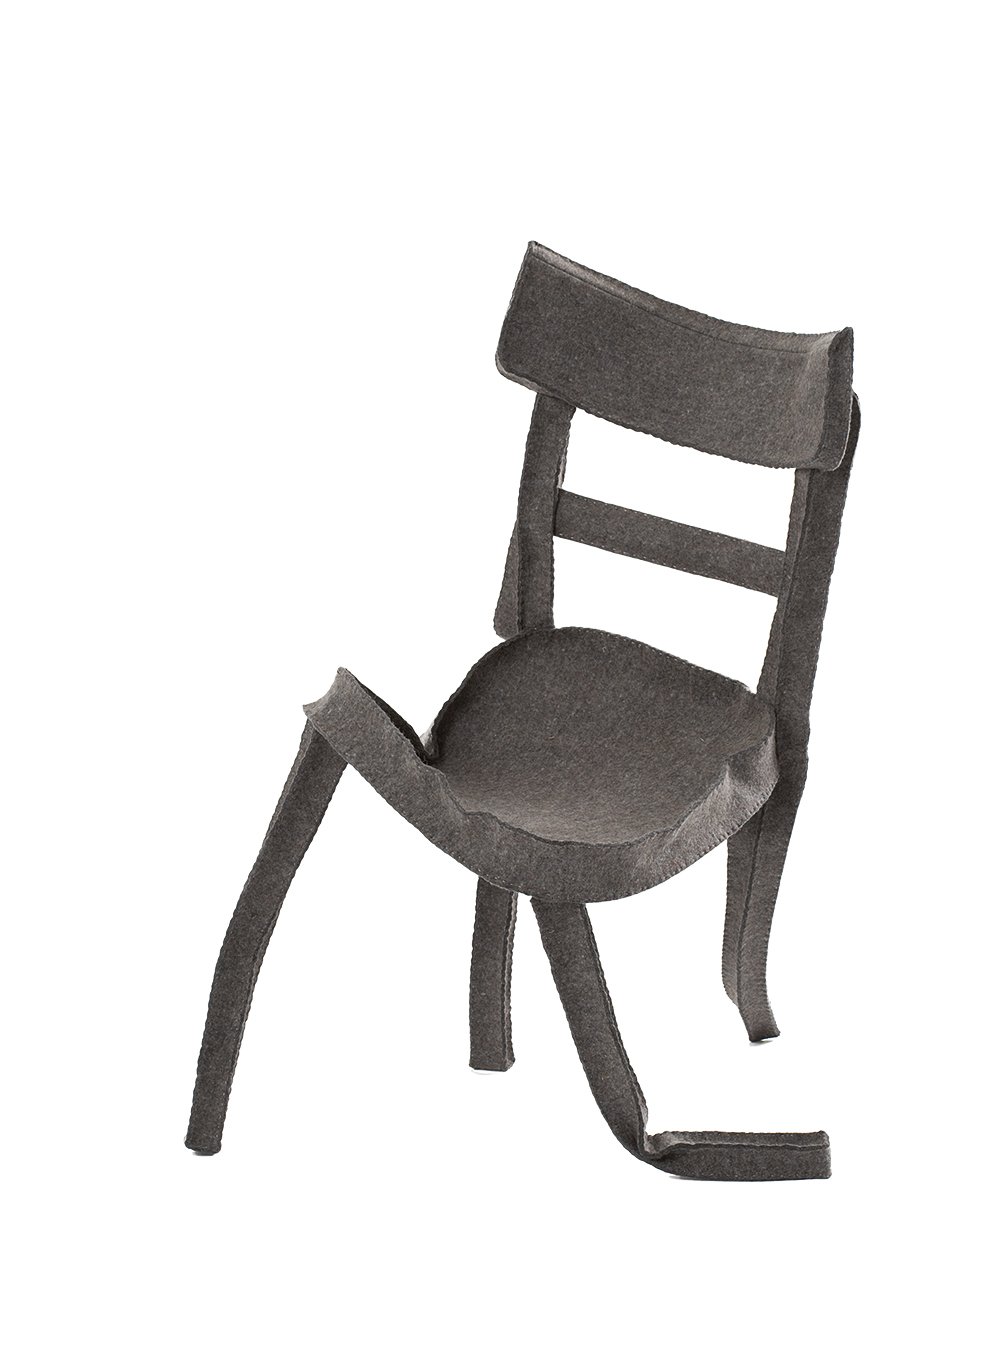 Stabile Seitenlage Design-Genie Rolf Sachs schuf diesen Sessel aus Filz, der mehr wie ein verzweifeltes Wesen, das nach Gleichgewicht sucht, wirkt denn wie eine Sitzmöglichkeit. Schräg im wahrsten Sinne. rolfsachs.com